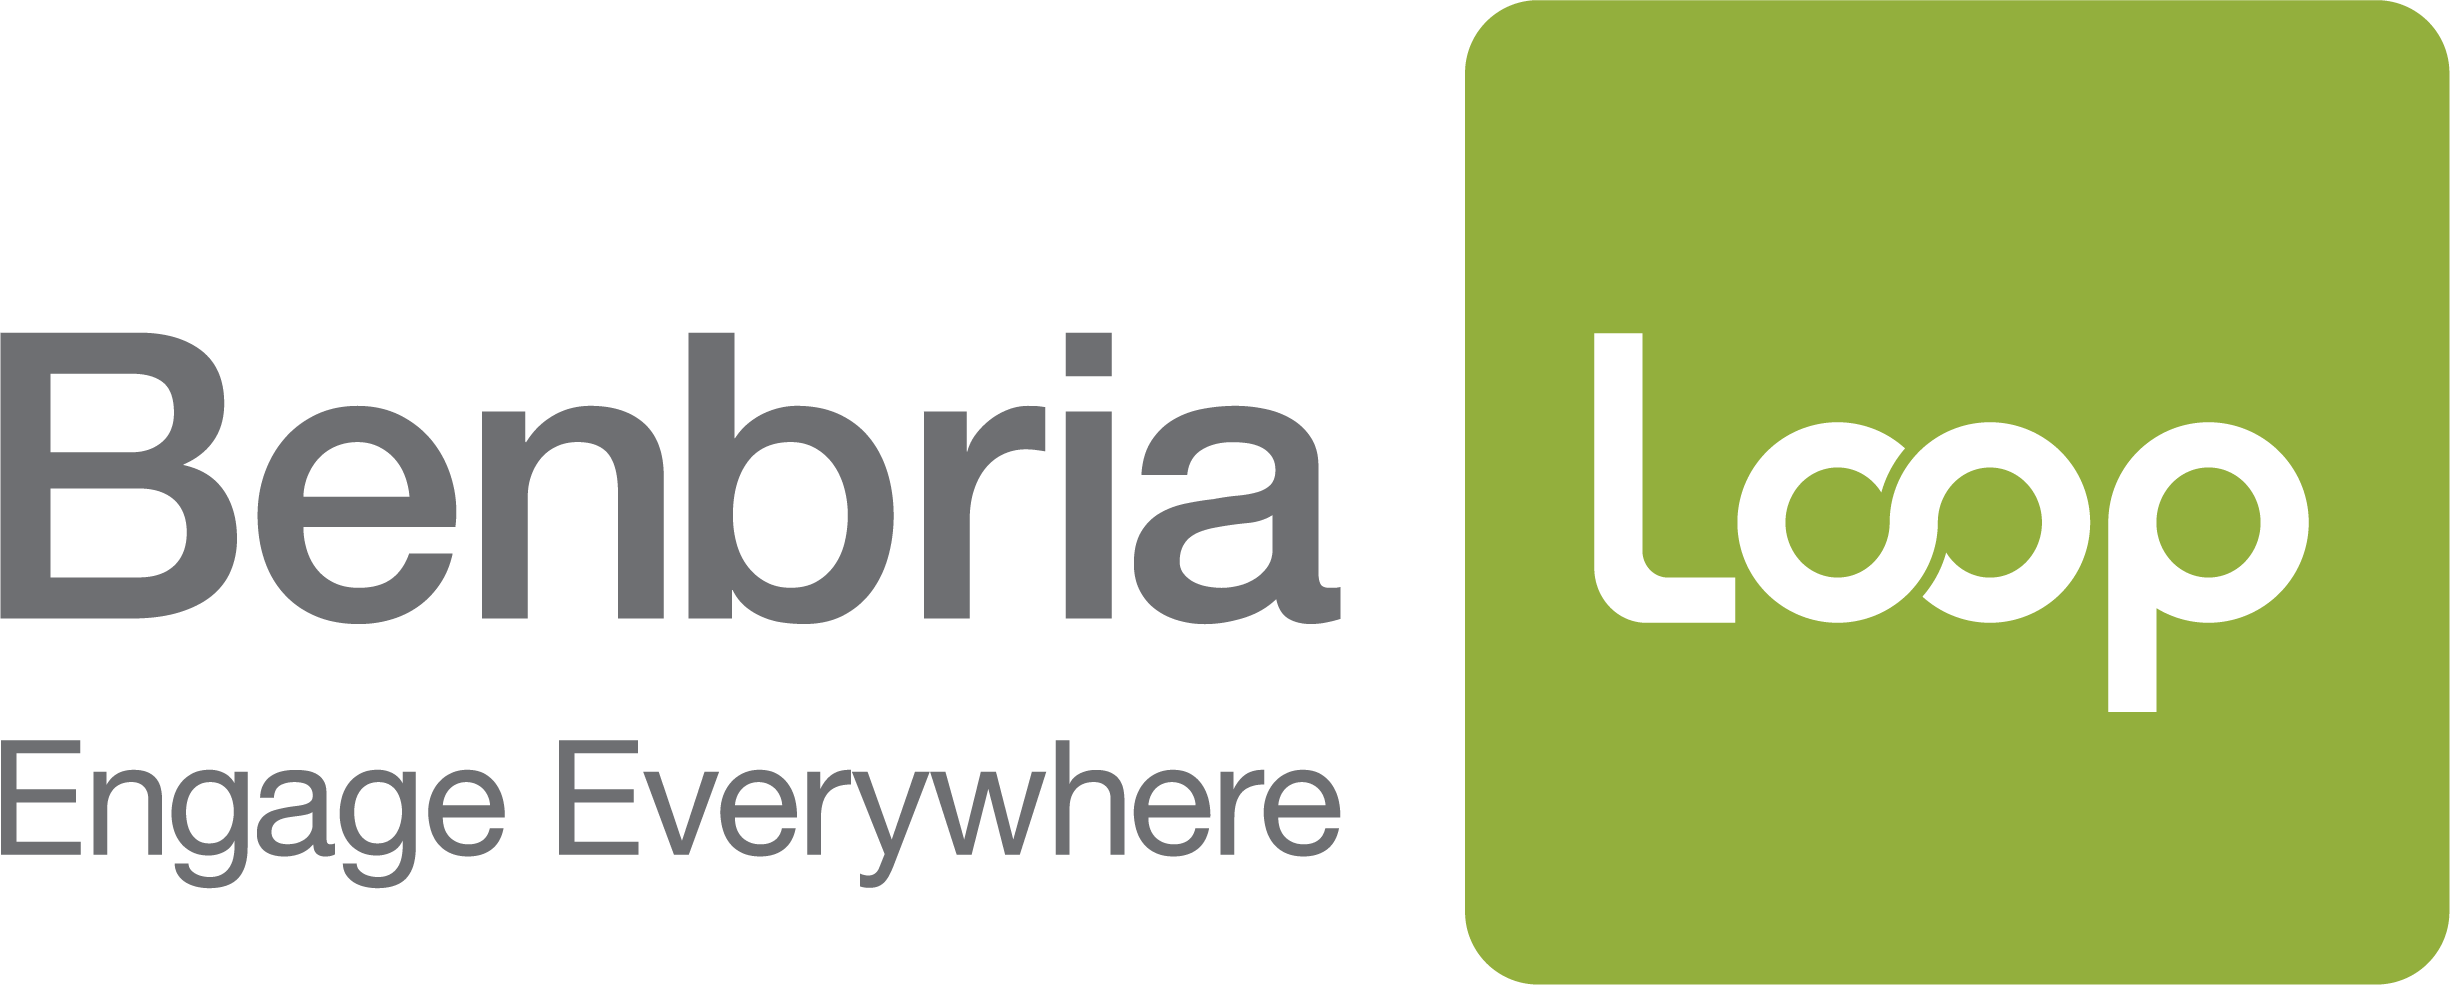 Benbria Loop Logo